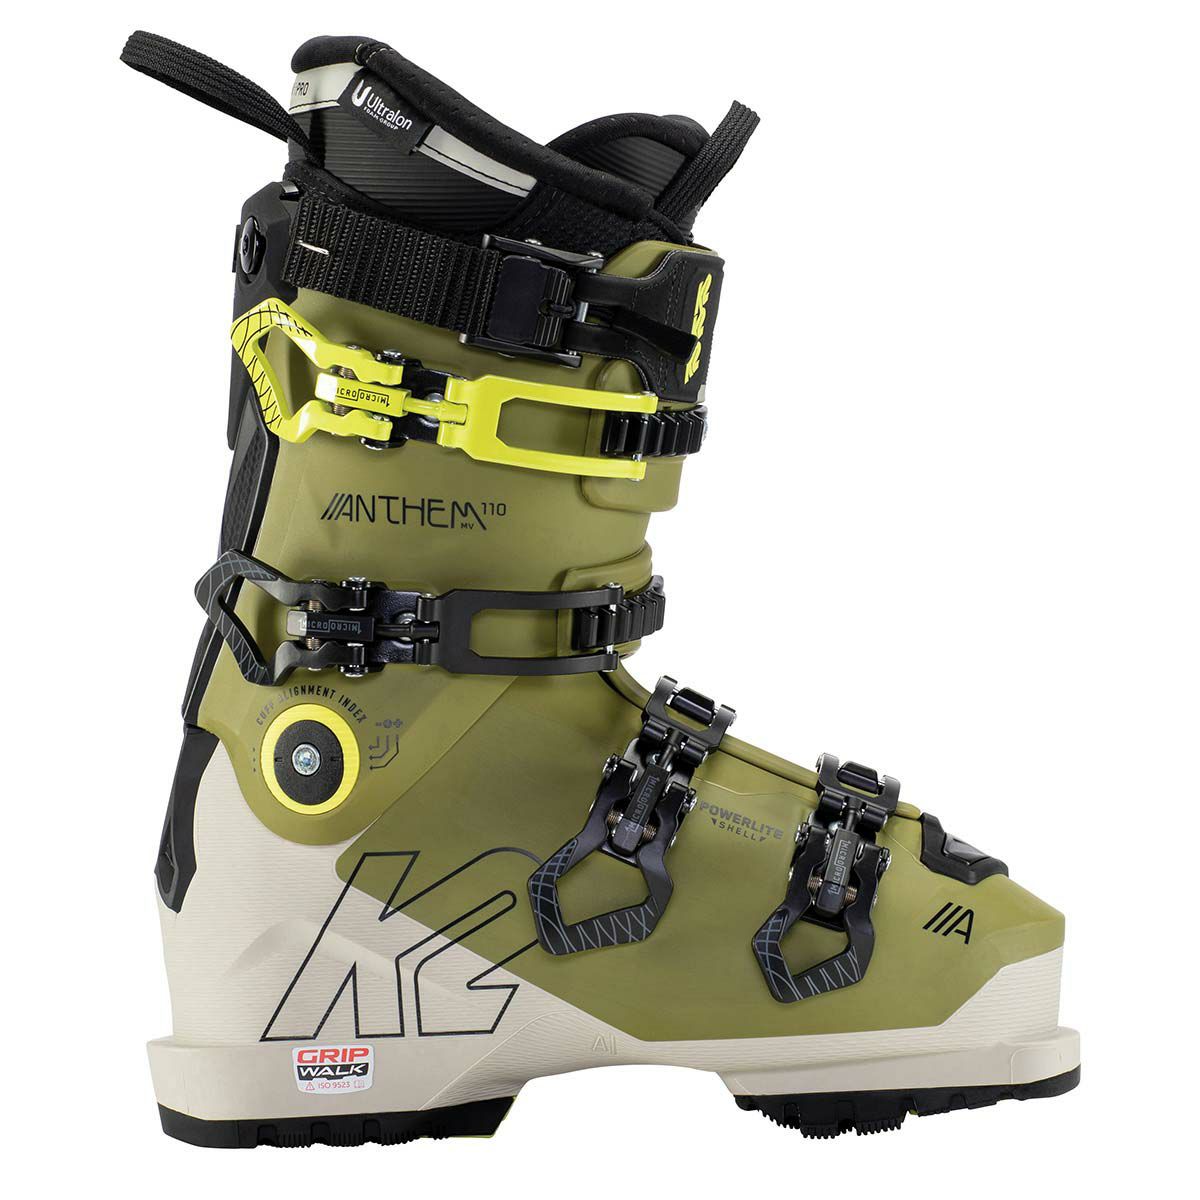 競売 スキーショップ安曇野  店K2 ケーツー スキーブーツ 《2021》ANTHEM 110 LV GW アンセム〈 送料無料 〉 